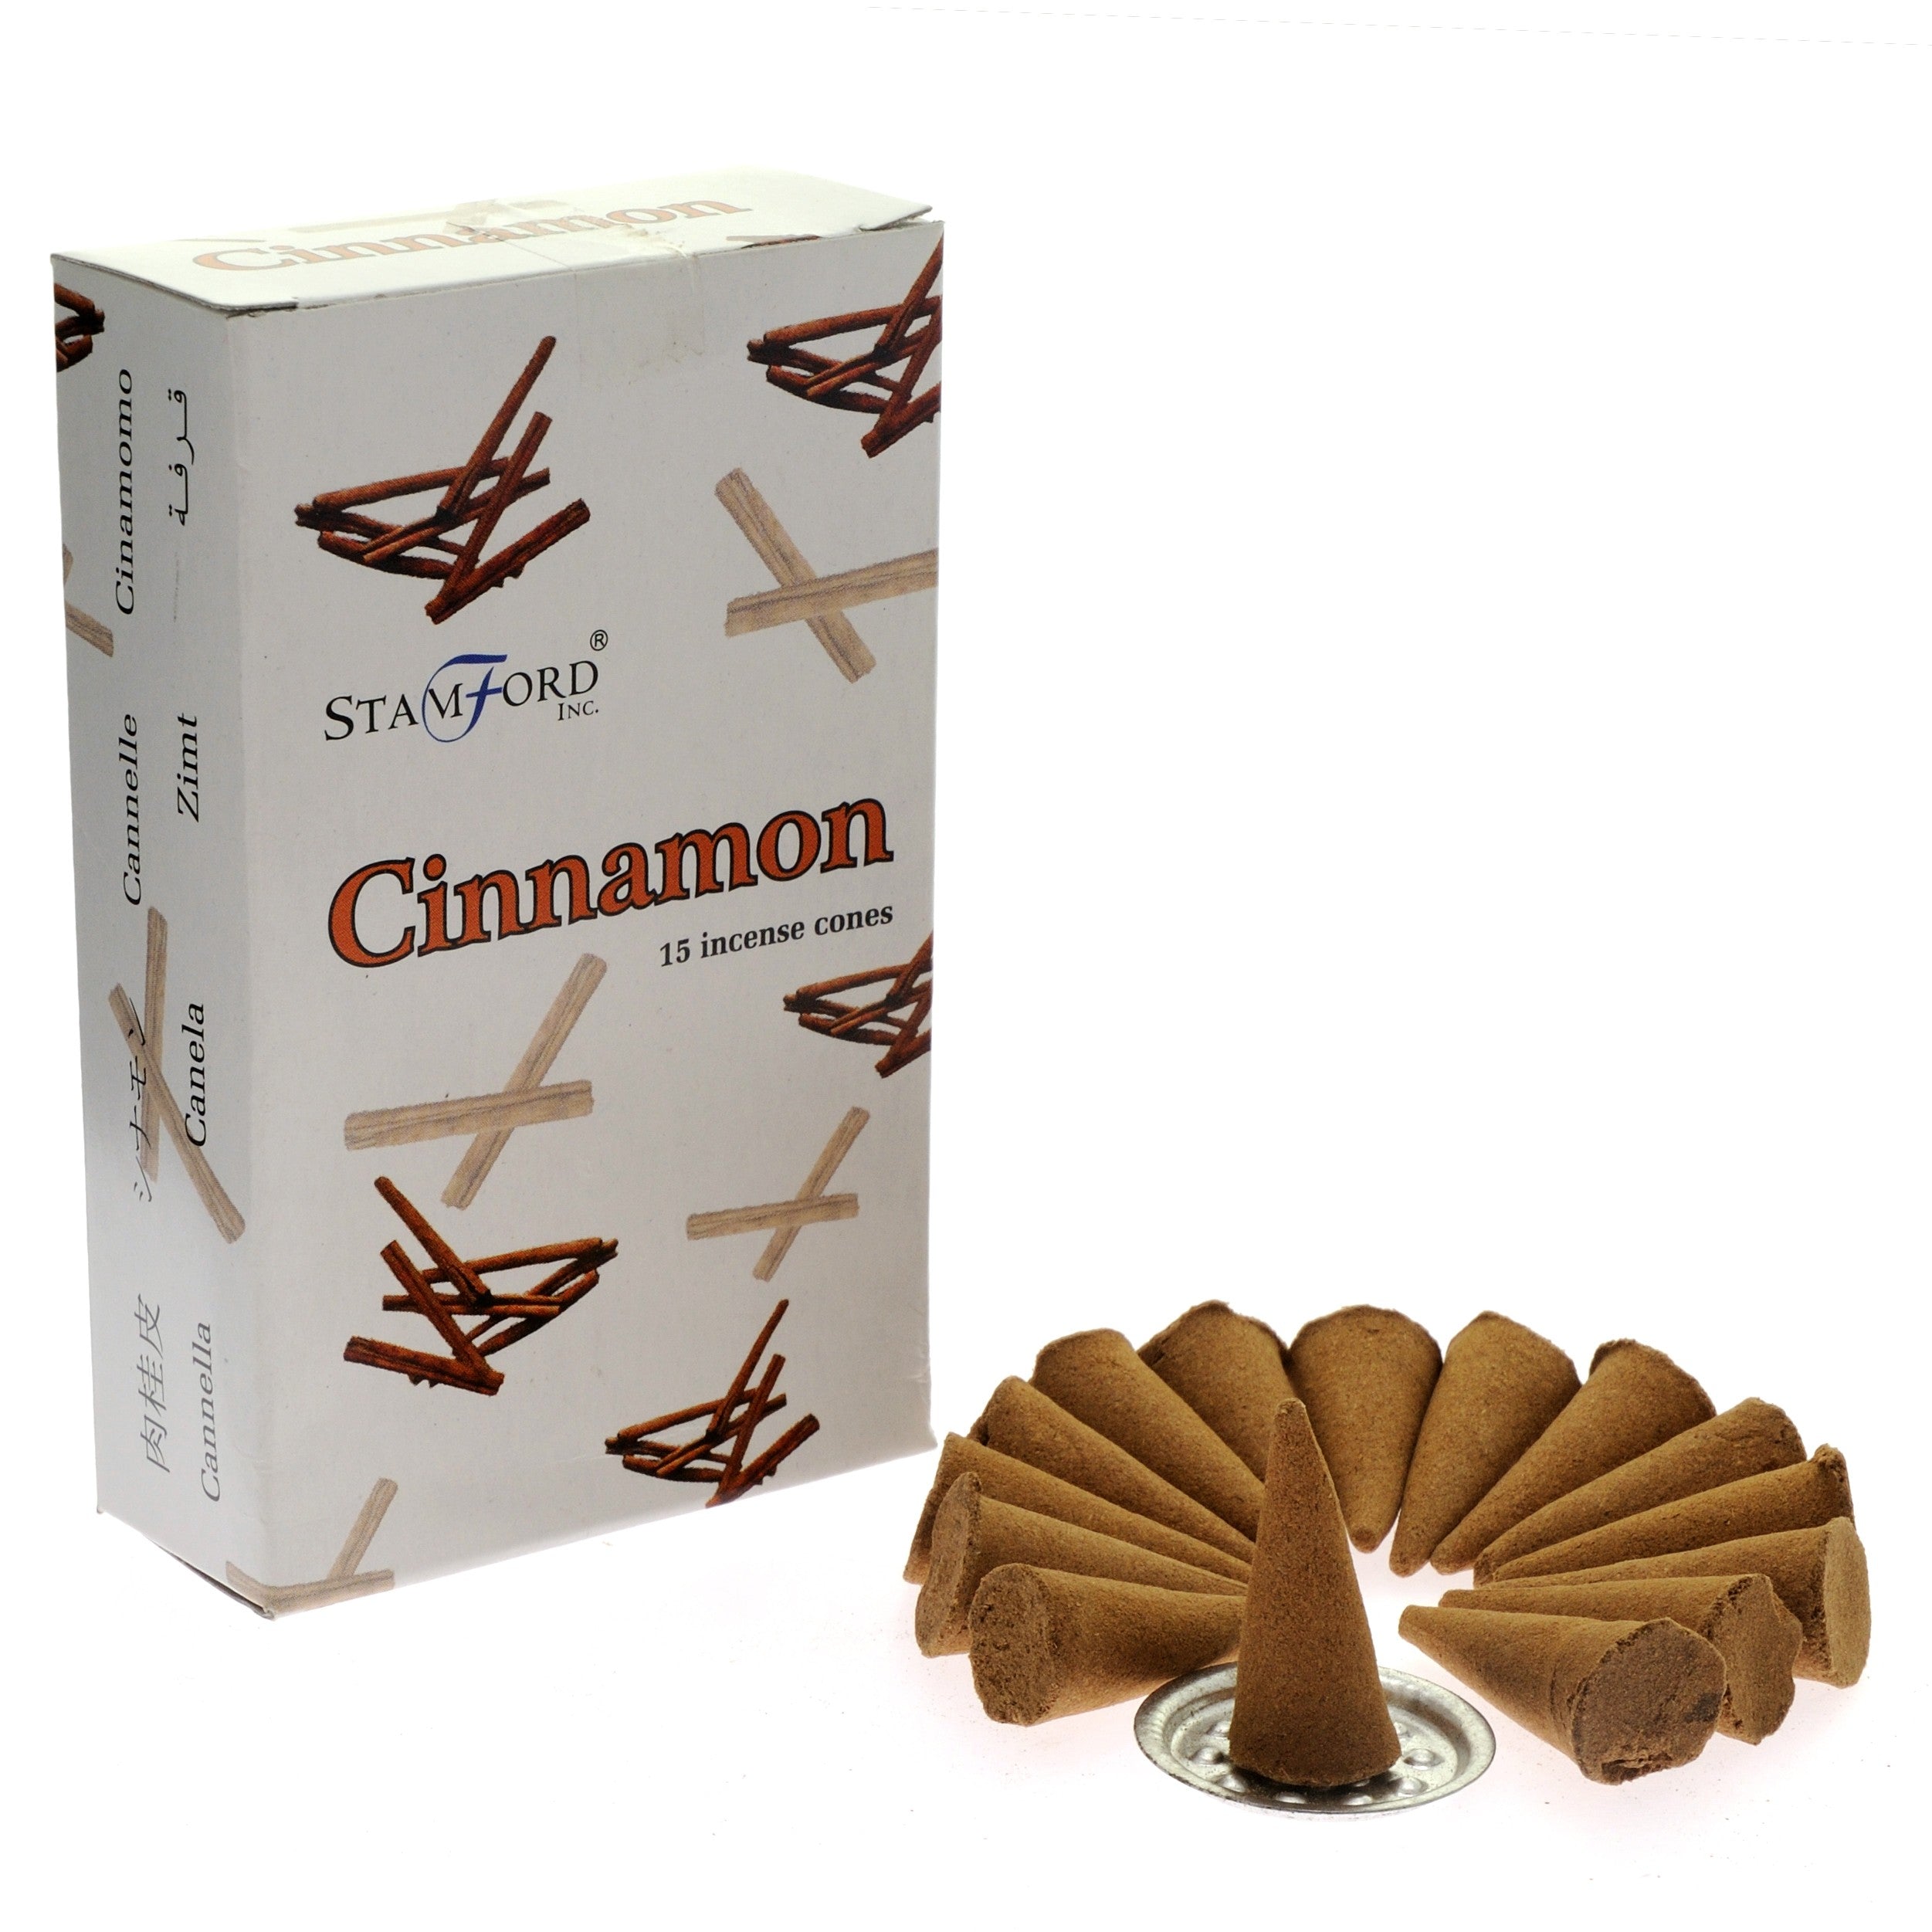 View Cinnamon Cones information